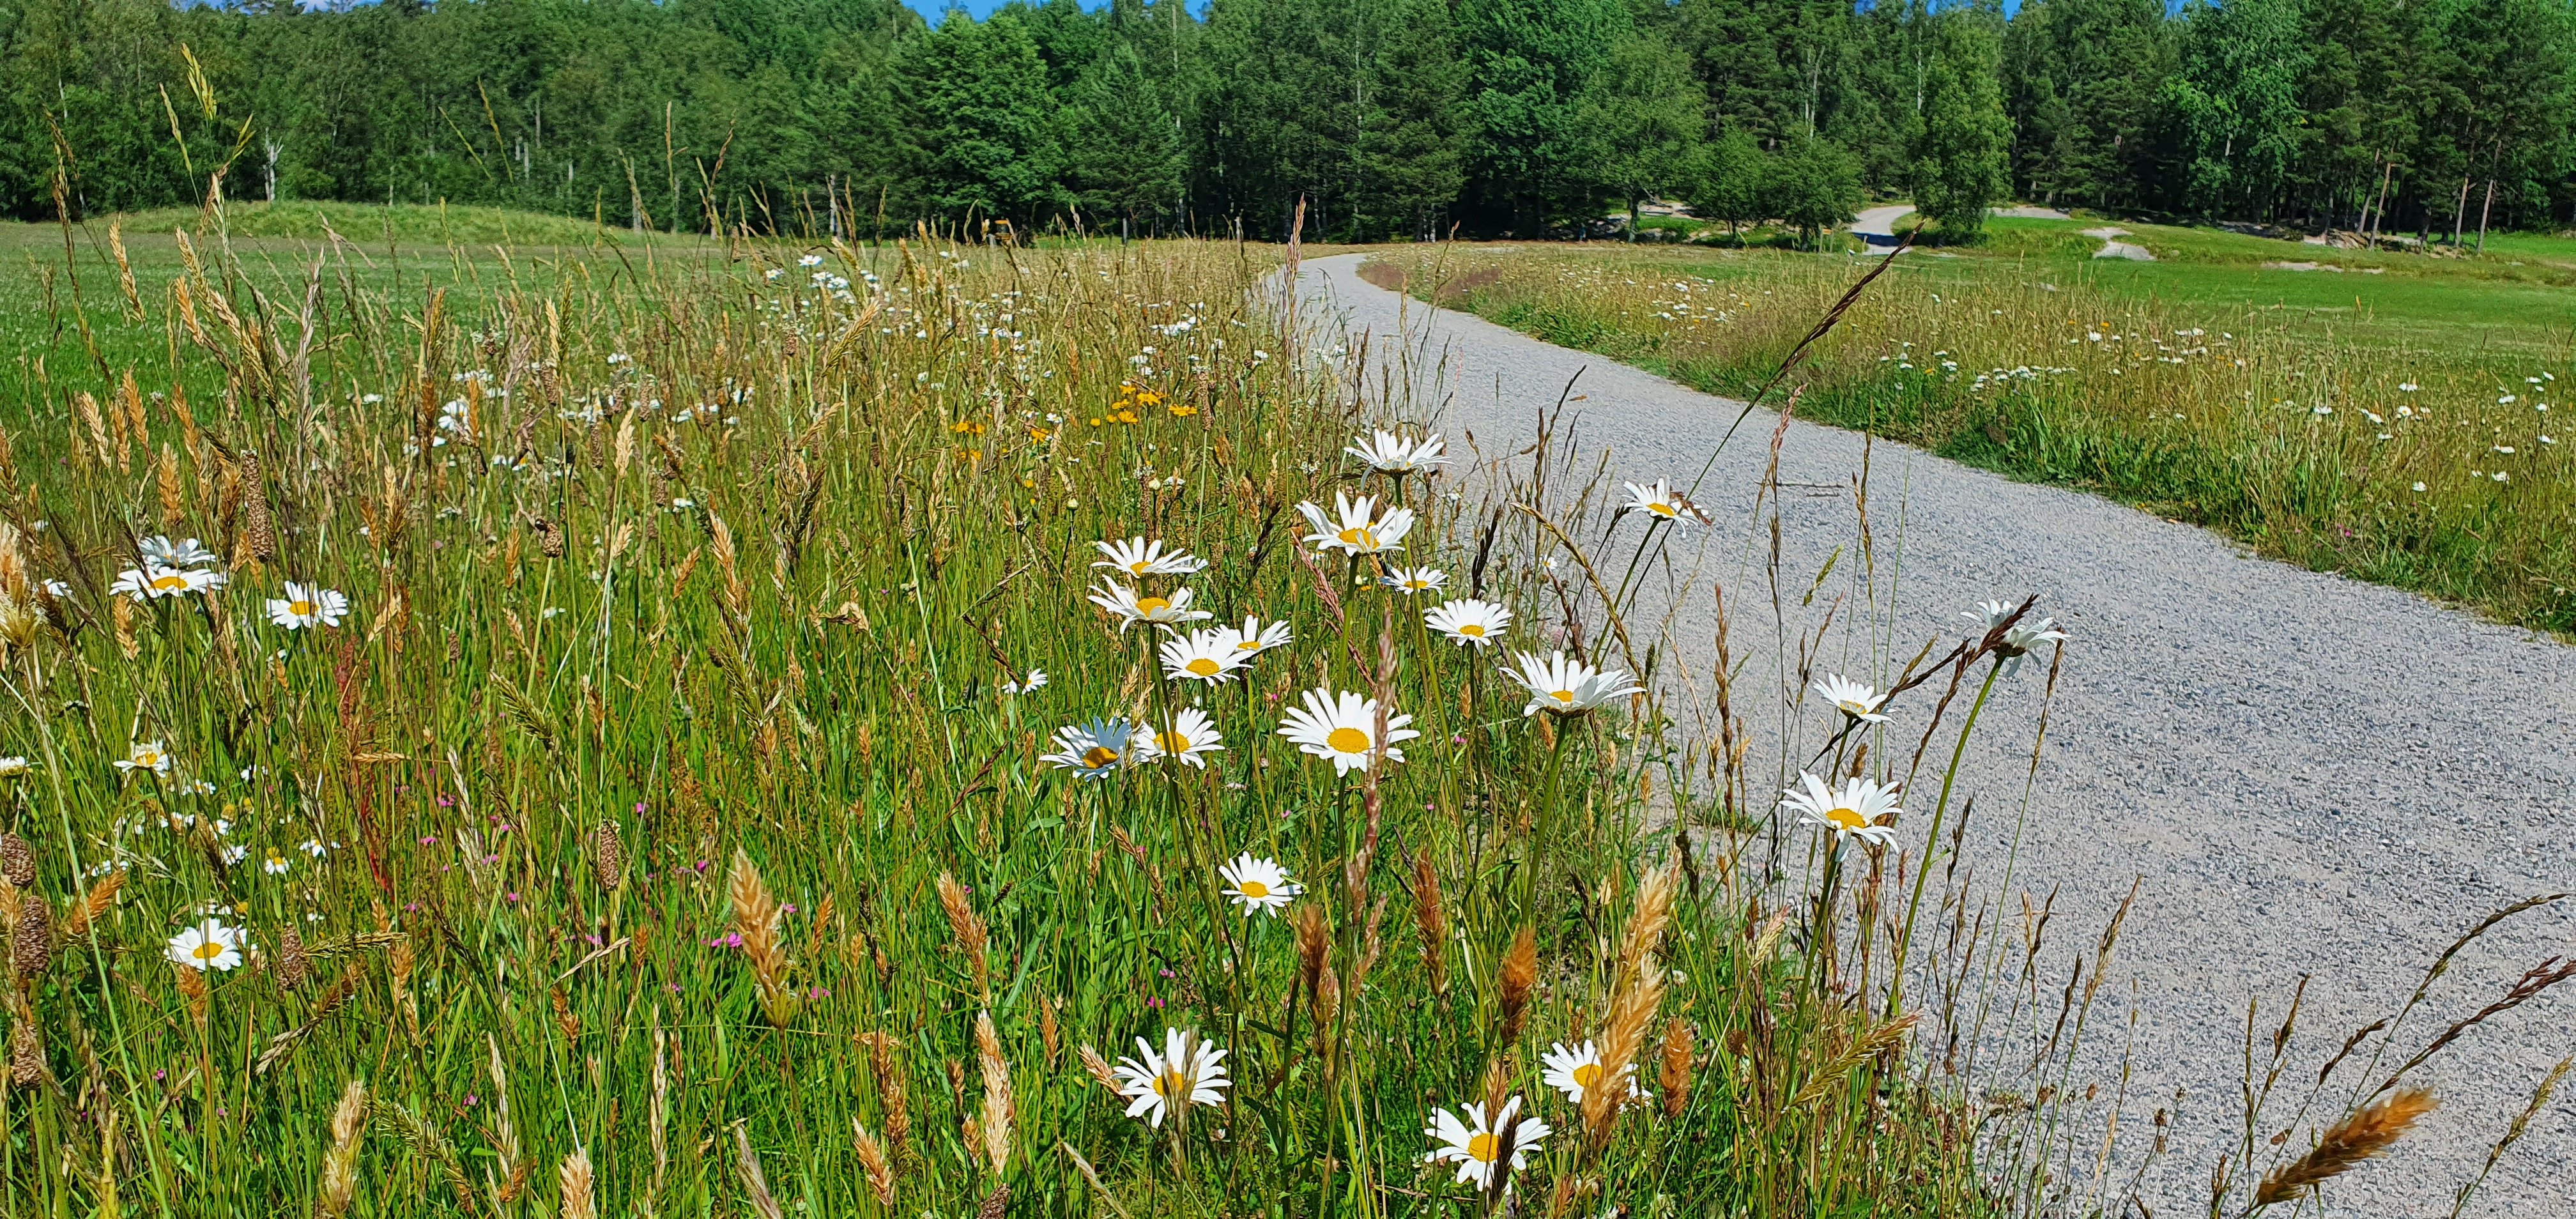 Blommor längs en grusväg. I förgrunden blommar de vita prästkragarna med gul färg i mitten..